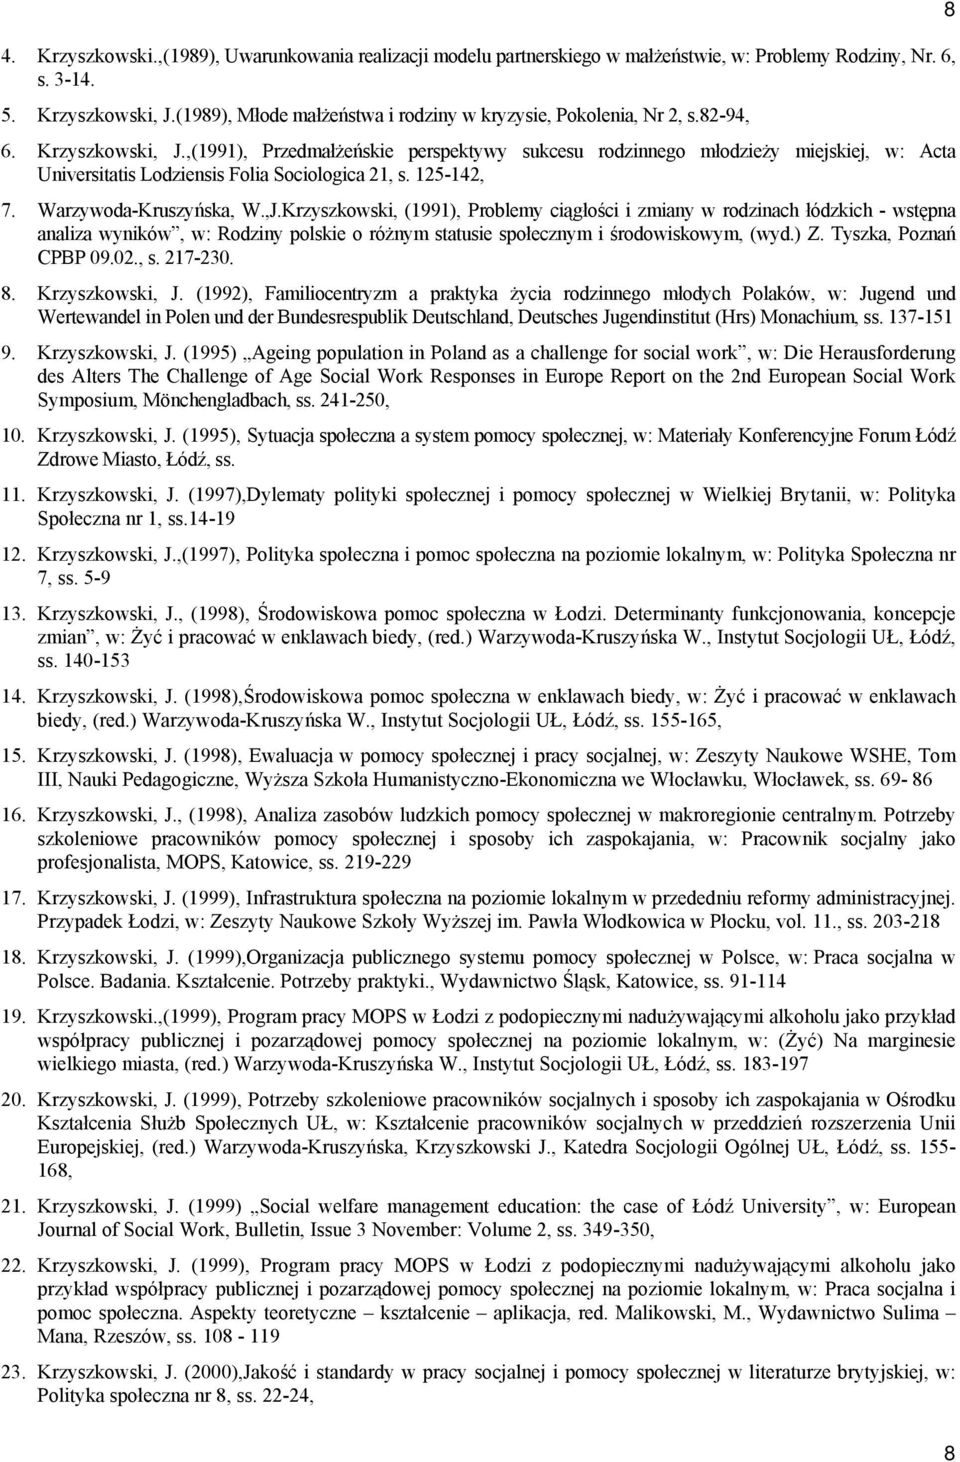 ,(1991), Przedmałżeńskie perspektywy sukcesu rodzinnego młodzieży miejskiej, w: Acta Universitatis Lodziensis Folia Sociologica 21, s. 125-142, 7. Warzywoda-Kruszyńska, W.,J.